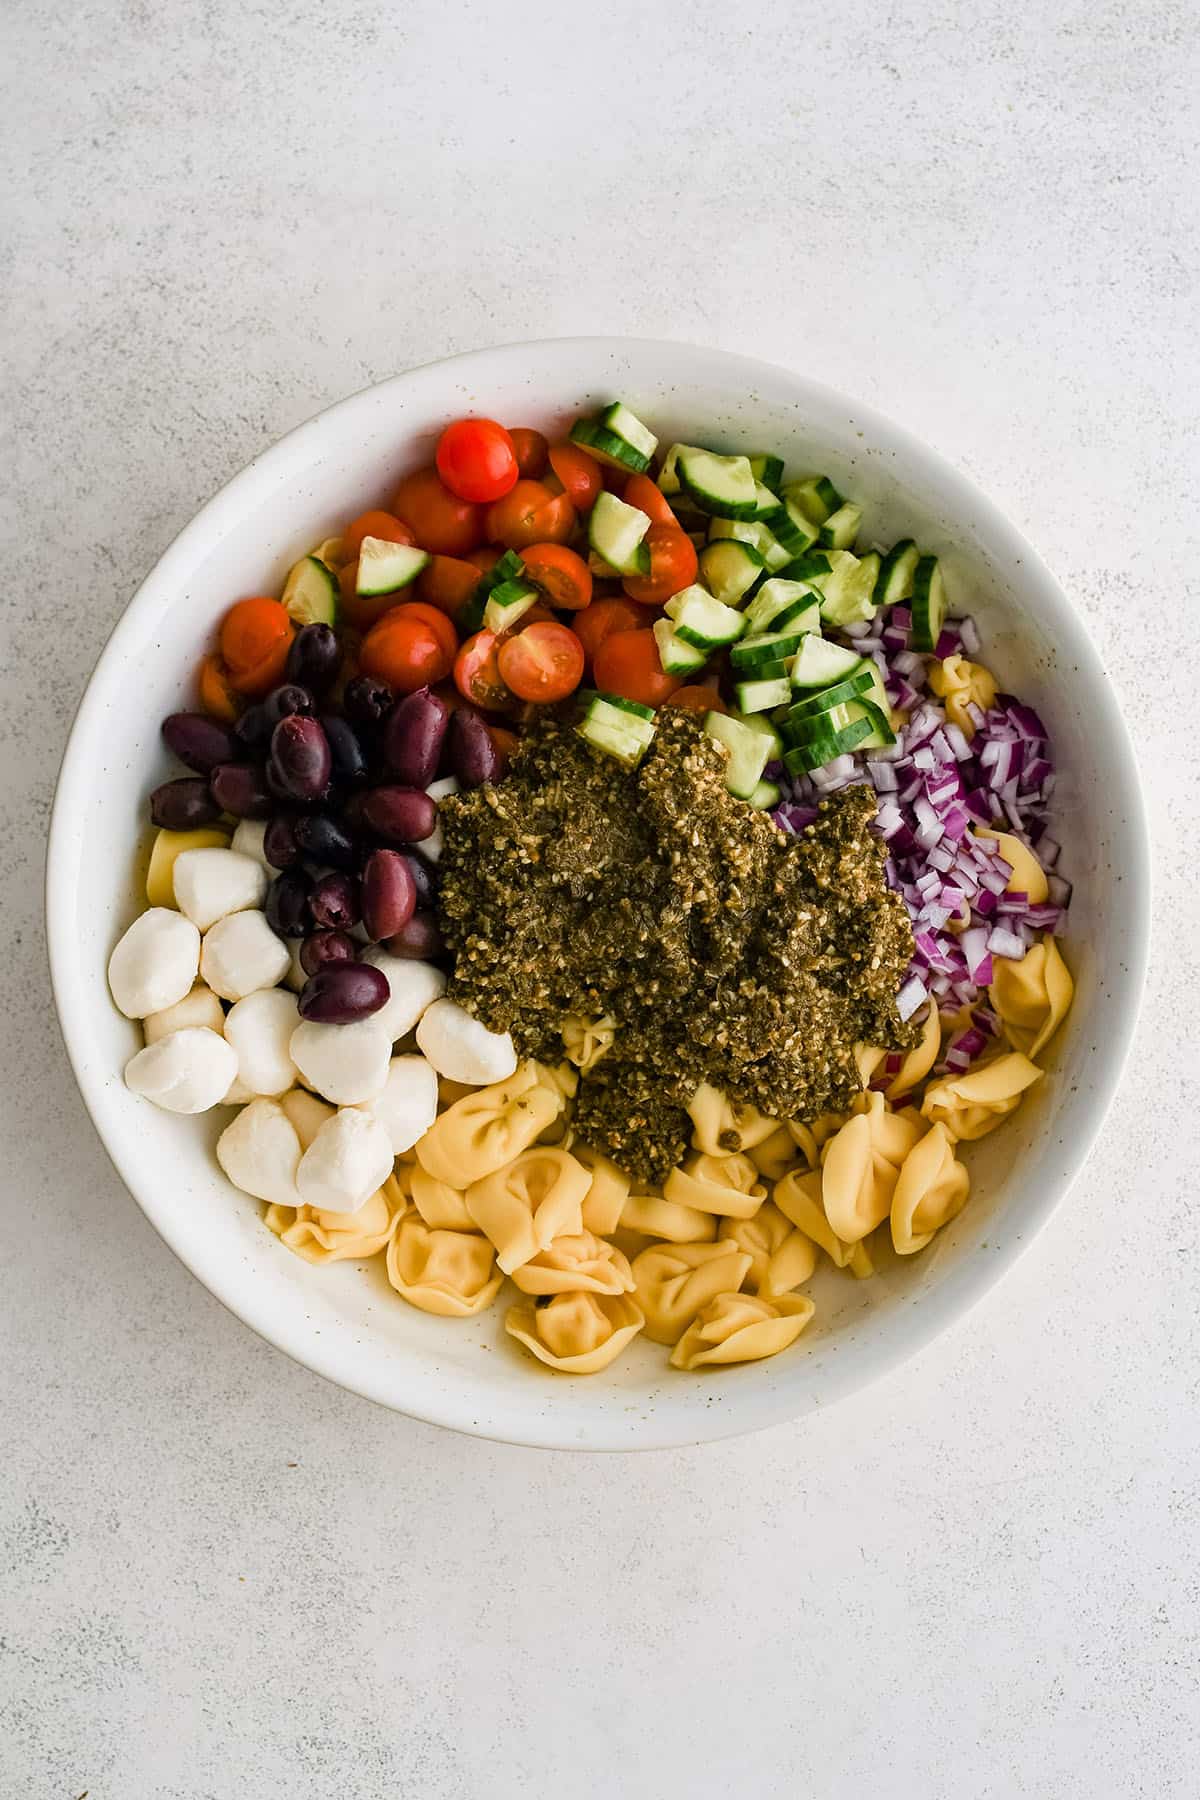 ingredients to make pesto tortellini salad in a large bowl